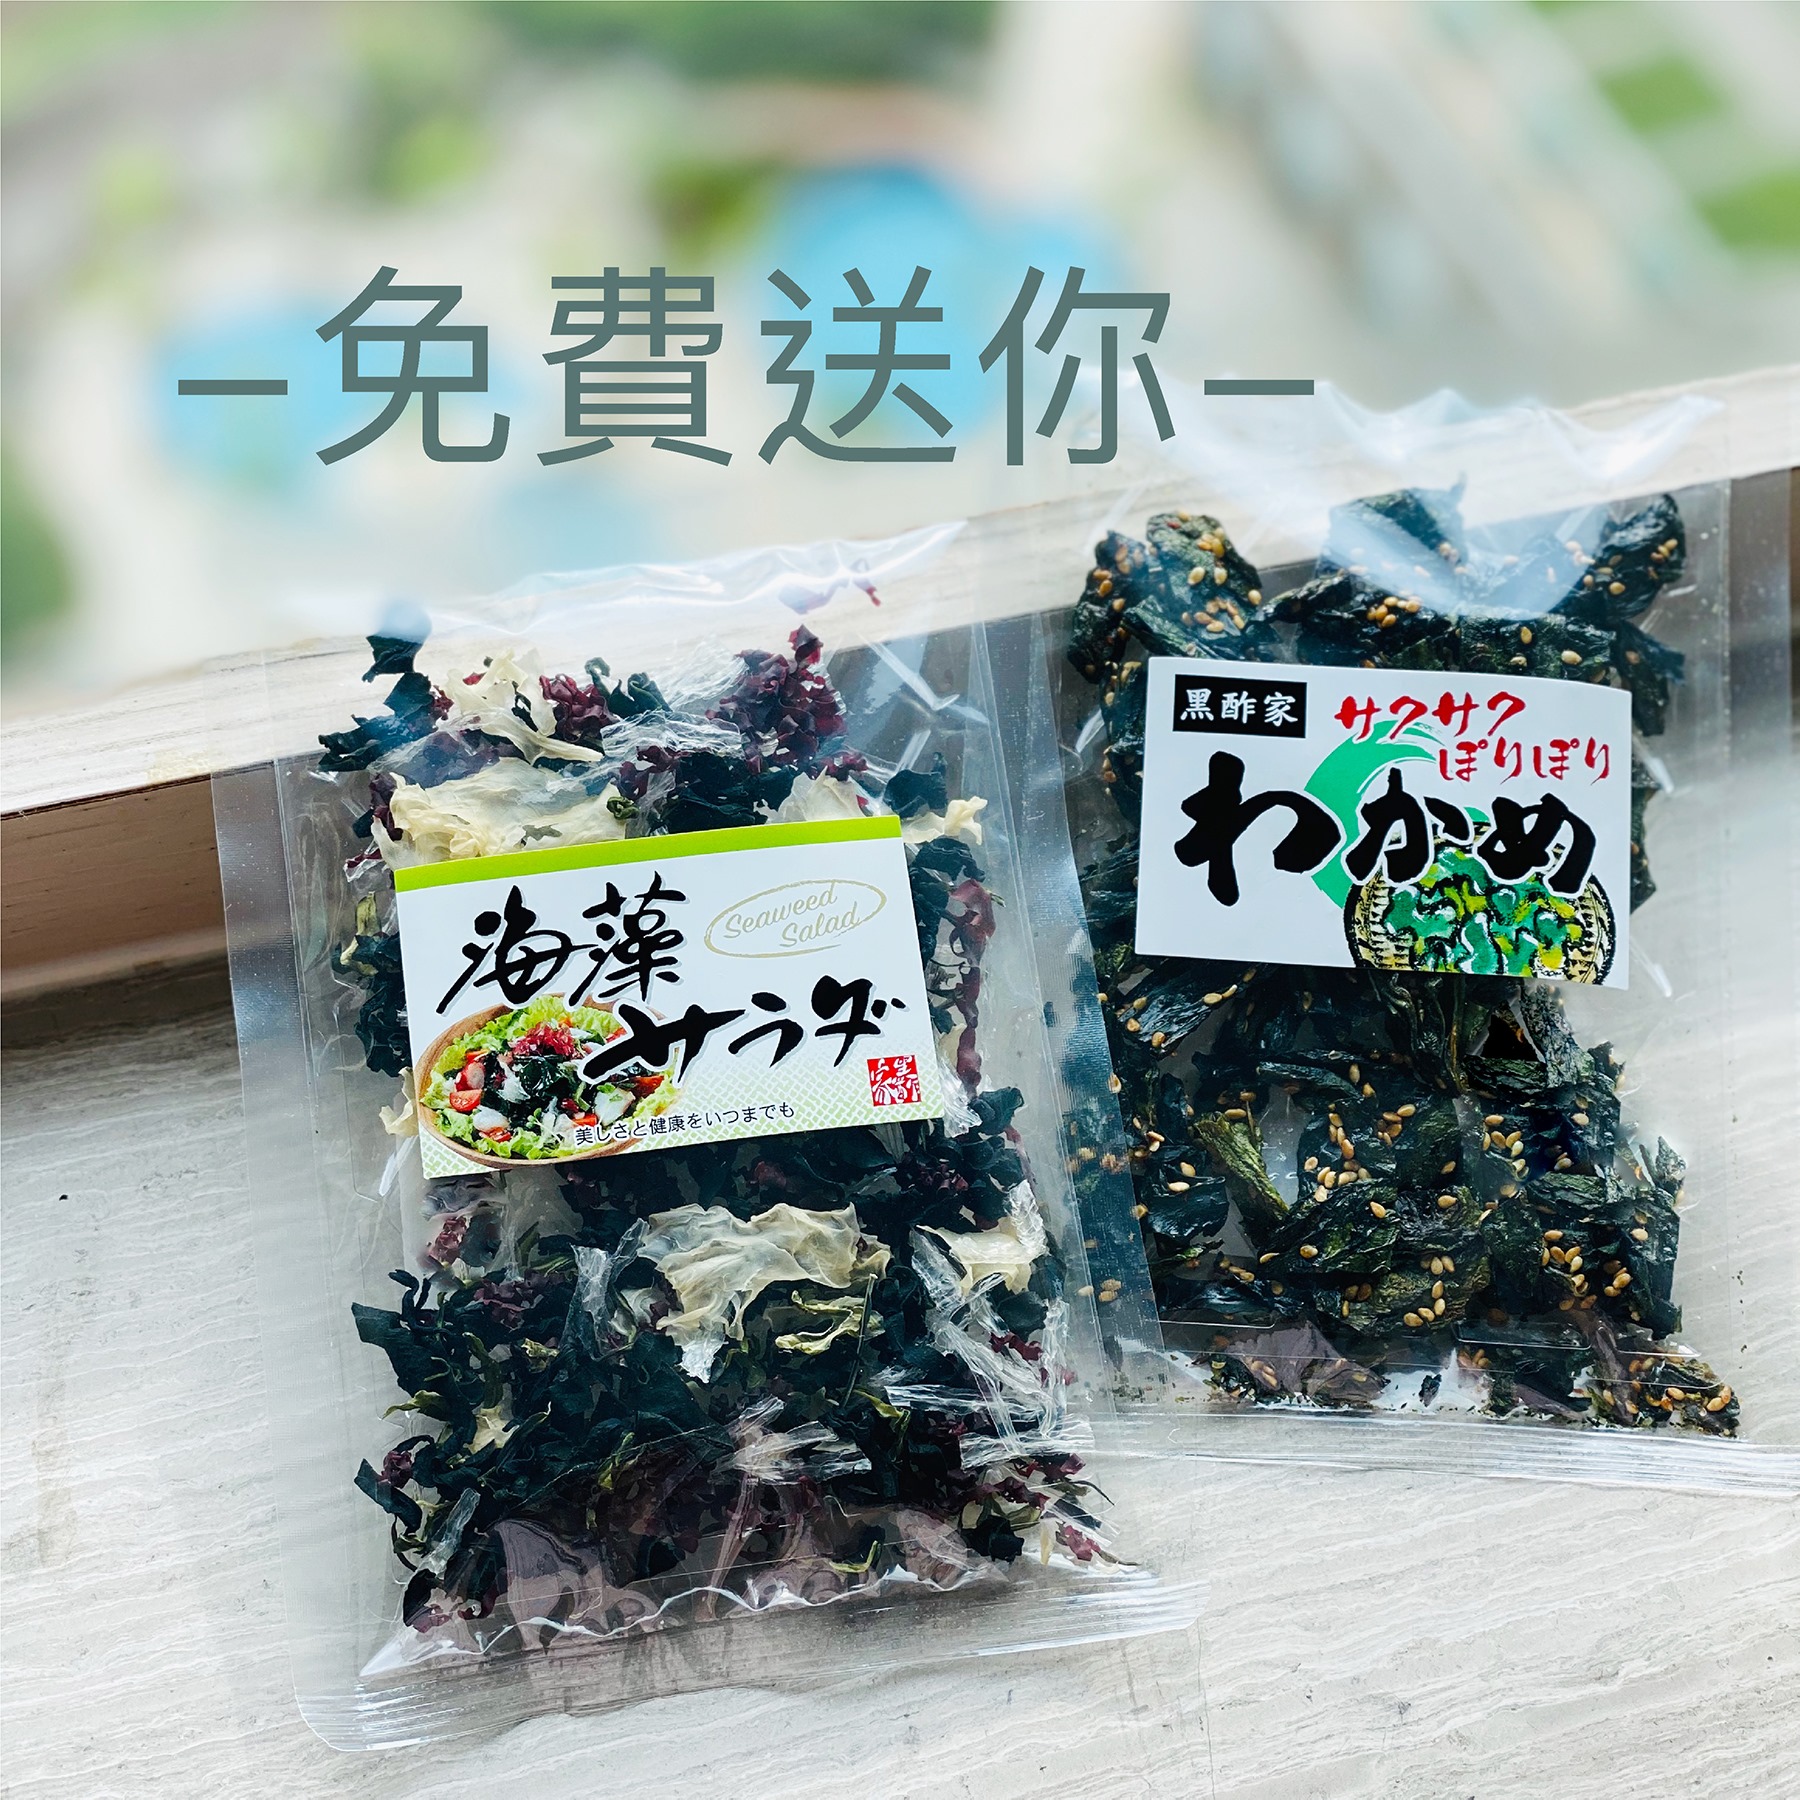 黑酢家 KUROZU 有獎遊戲送 日本芝麻海帶 + 海藻沙拉